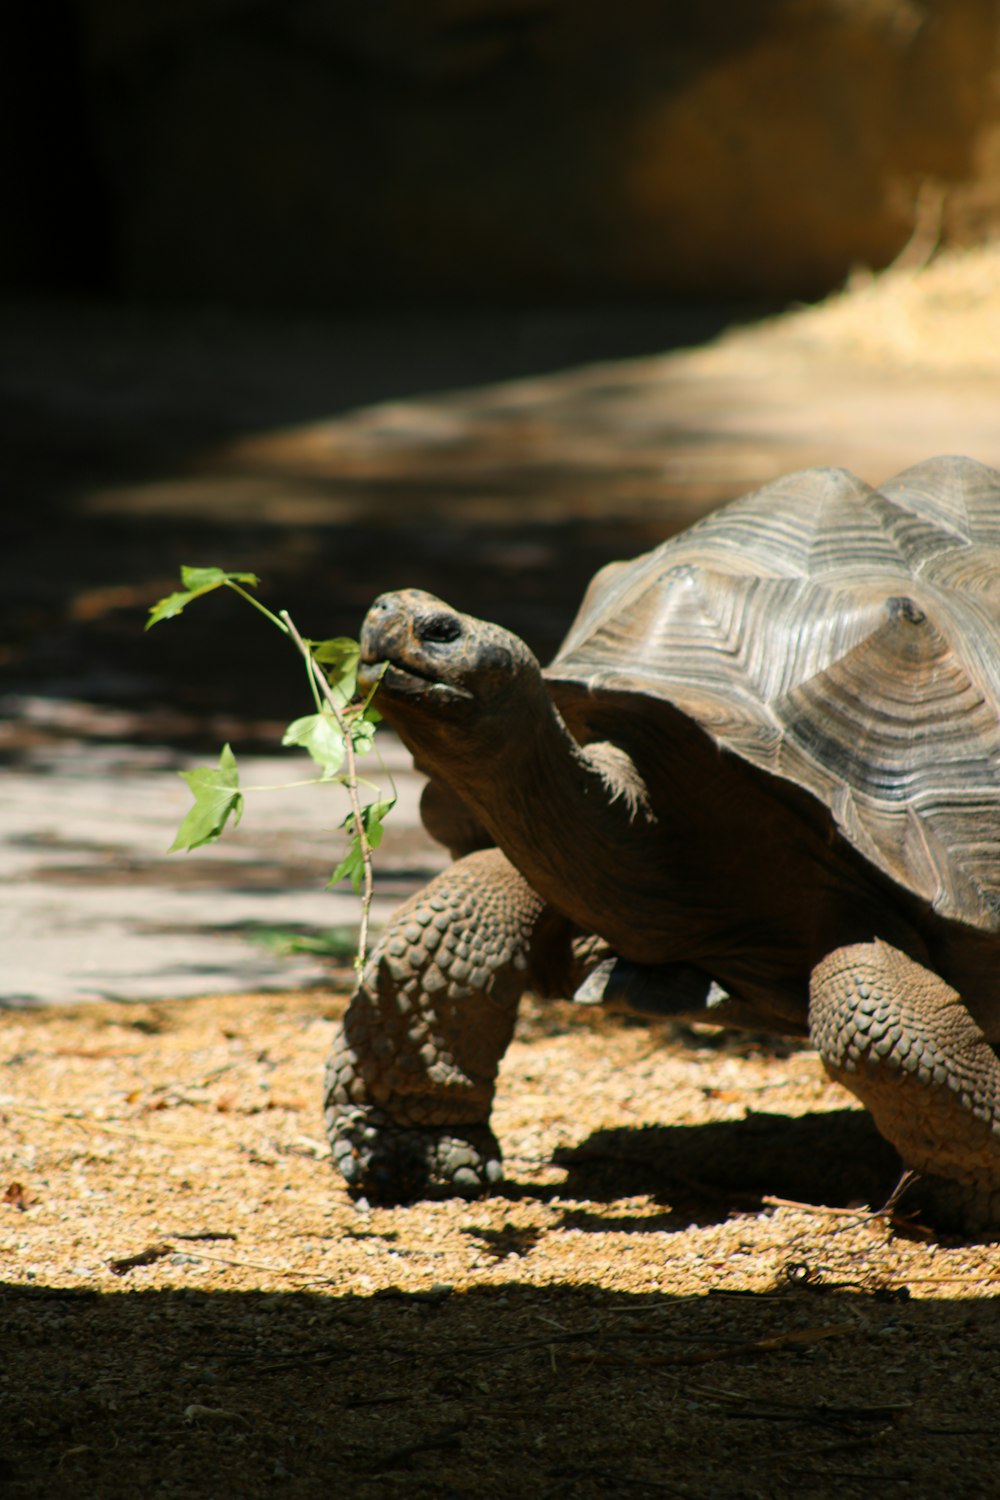 brown turtle walking on brown dirt during daytime